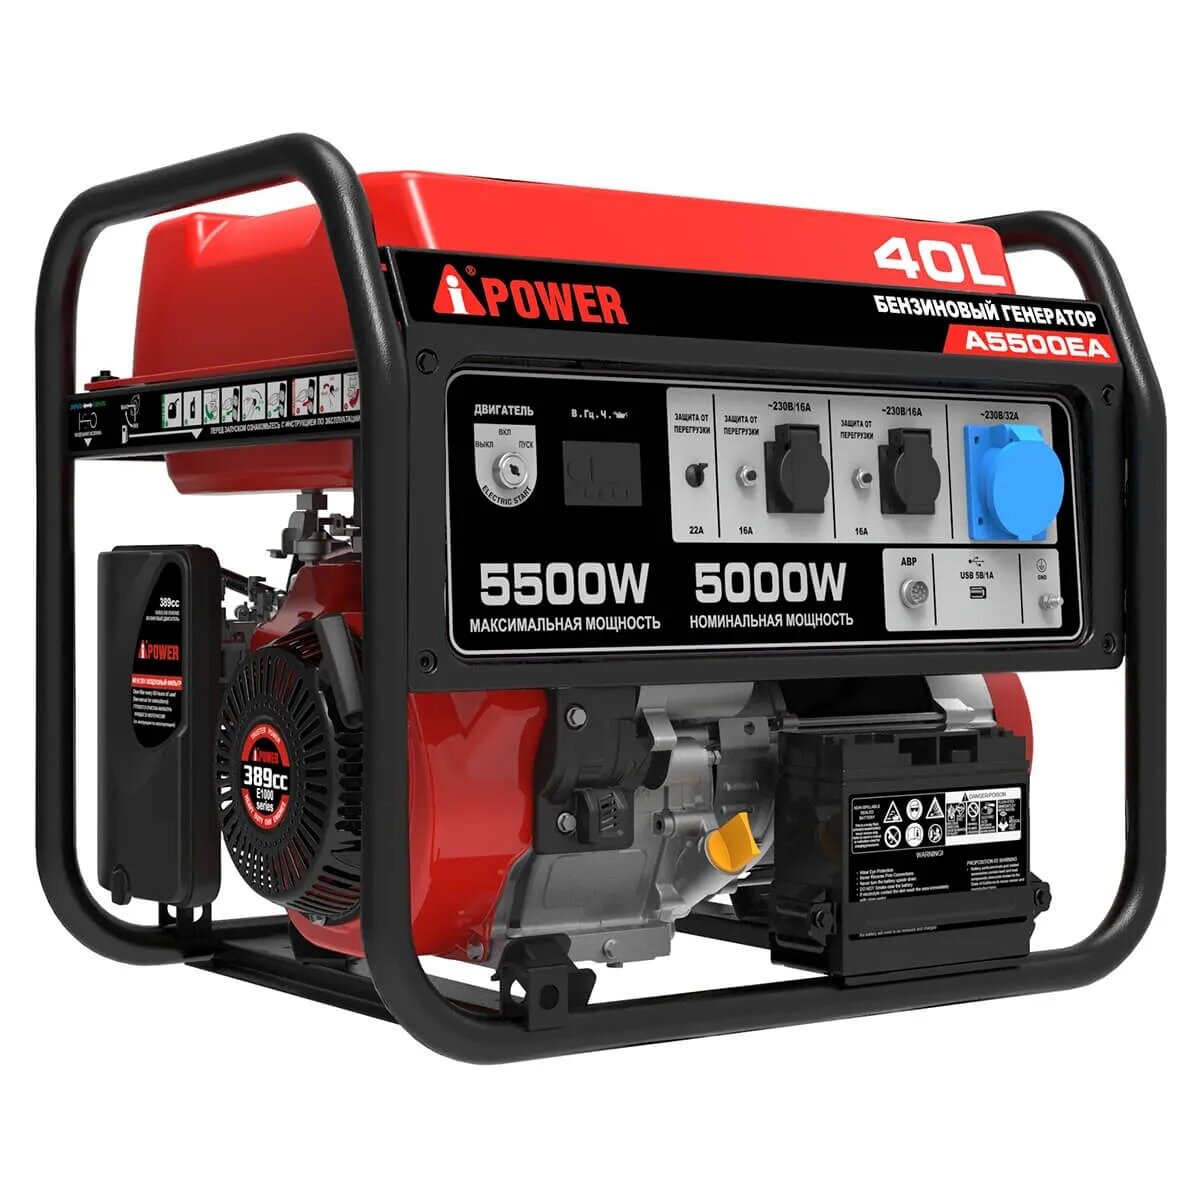 Бензиновый генератор A-iPower A5500EA + блок автозапуска A-iPower 230 В 50 А + транспортировочный комплект A-iPower L